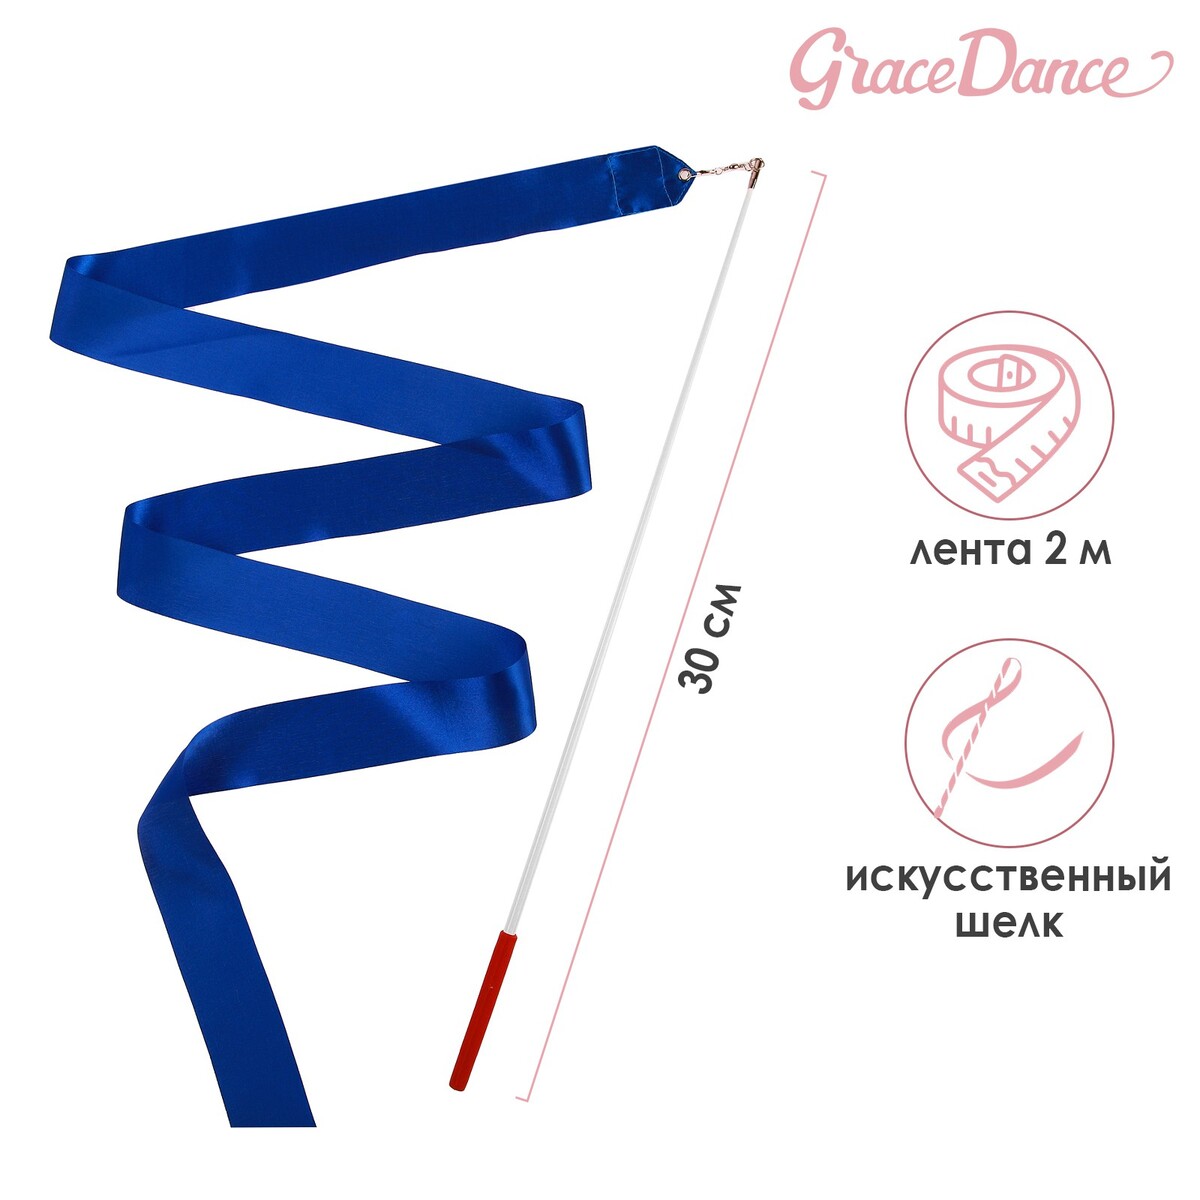 Лента для художественной гимнастики с палочкой grace dance, 2 м, цвет синий лента фиксации rockbros для перевозки и хранения велосипедов зеленый rb 51210071002